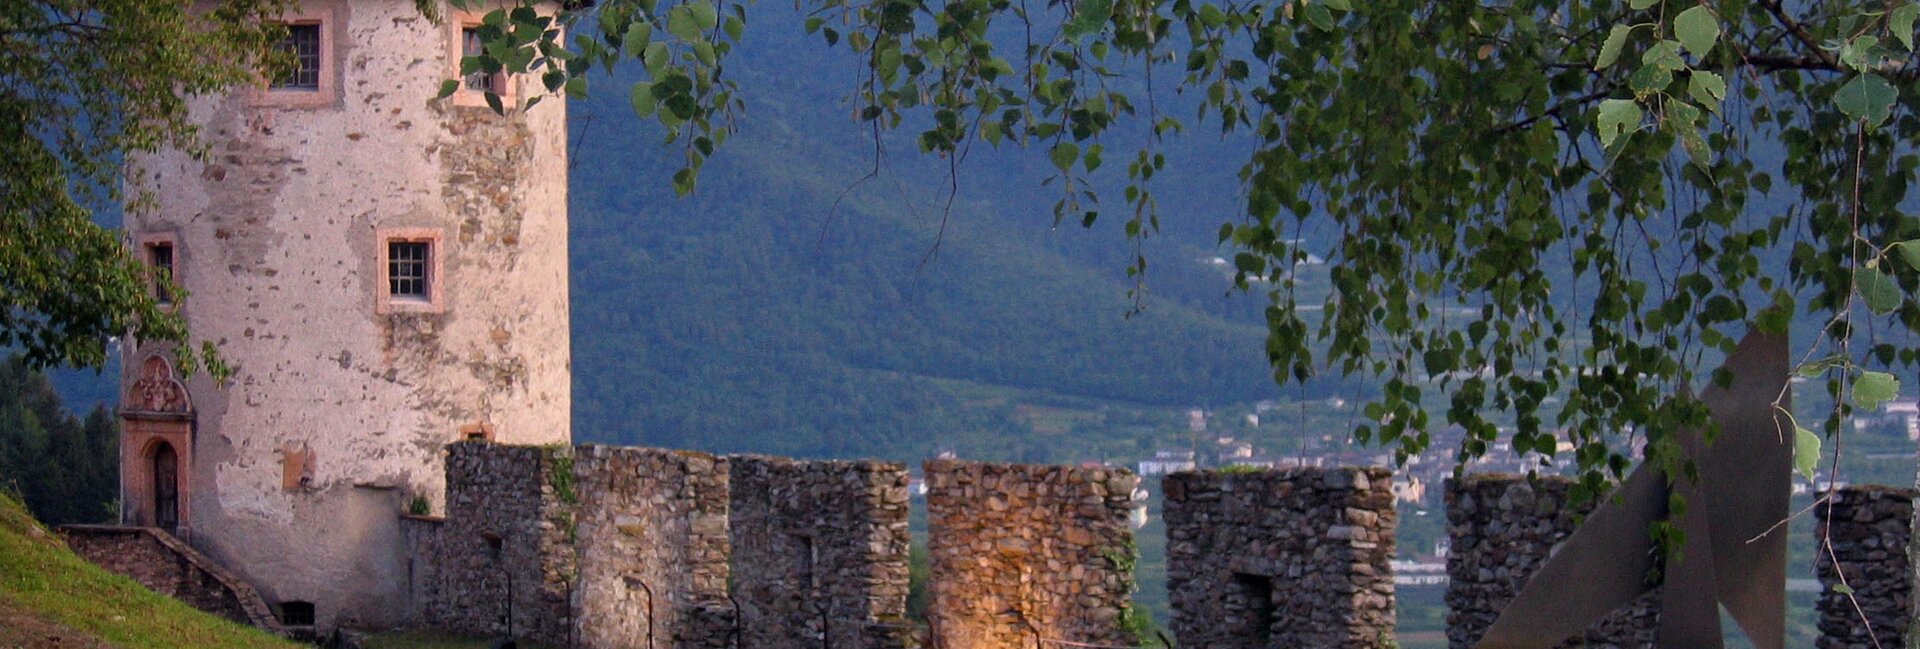 Castel Pergine | © Foto Archivio Apt